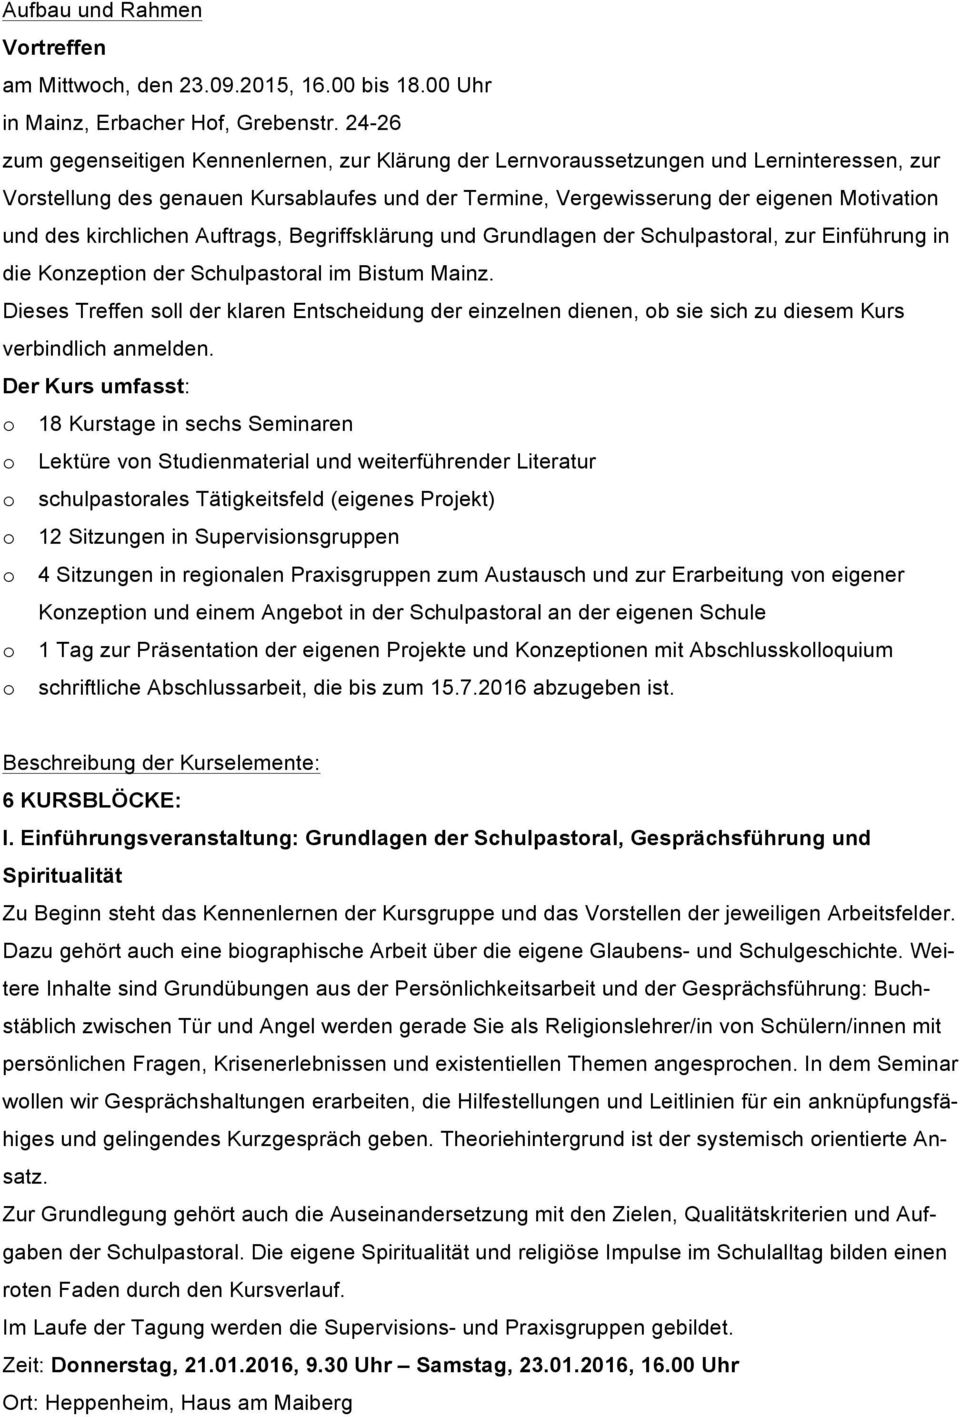 kirchlichen Auftrags, Begriffsklärung und Grundlagen der Schulpastoral, zur Einführung in die Konzeption der Schulpastoral im Bistum Mainz.